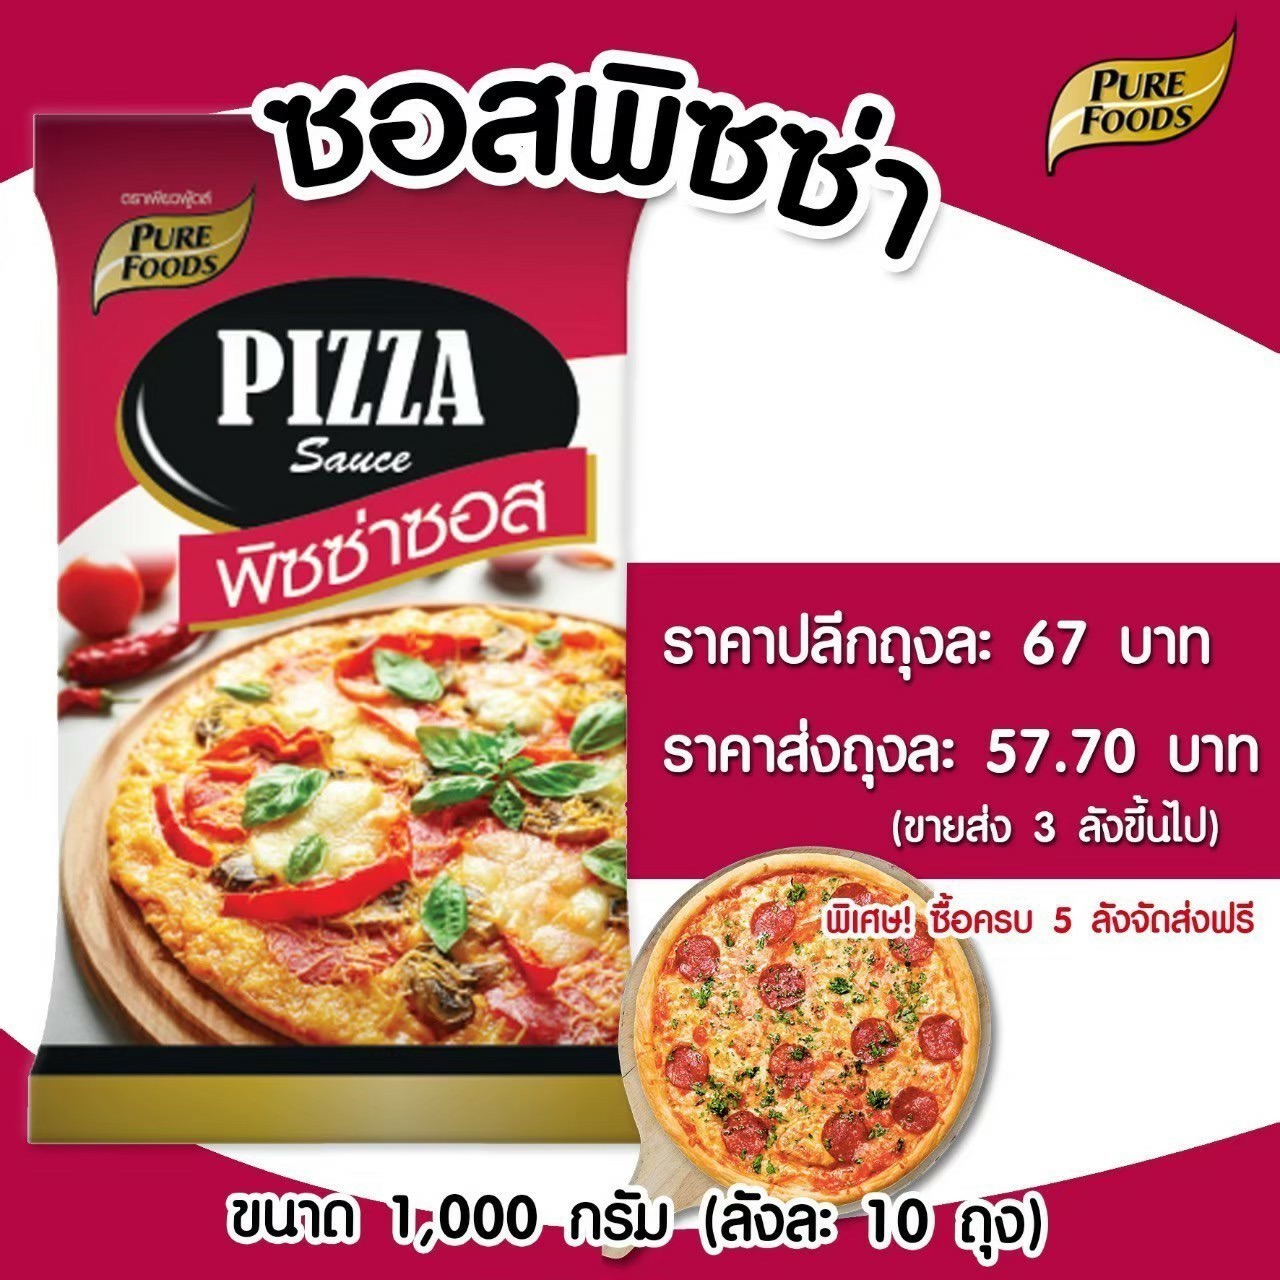 พิซซ่า ซอส ซอสพิซซ่า (Pizza sauce)  สำเร็จรูป เบเกอรี่ ขนมอบ พิซซ่า   ราคาถูก  อร่อย ตราเพียวฟู้ดส์ น้ำหนัก 1000 กรัม พร้อมส่ง